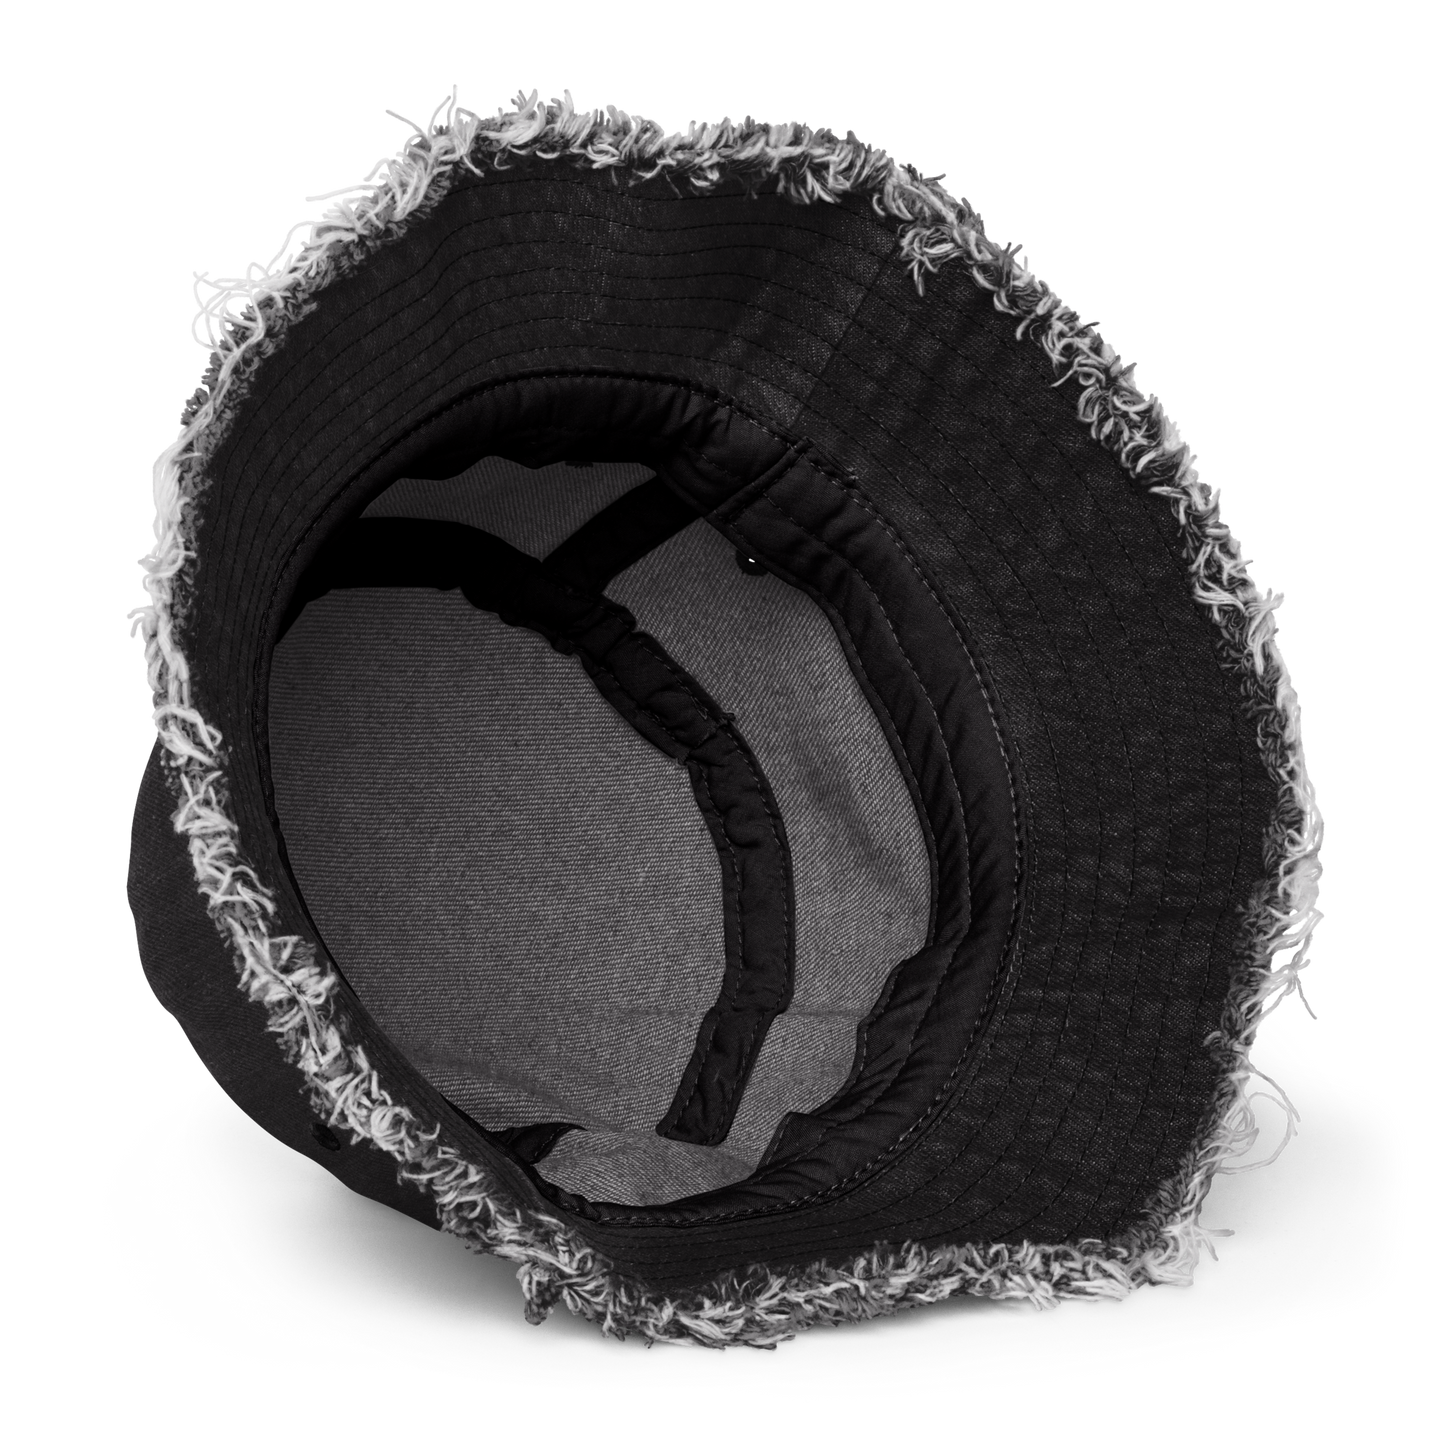 Doobee Adore 3D Distressed Denim Bucket Hats